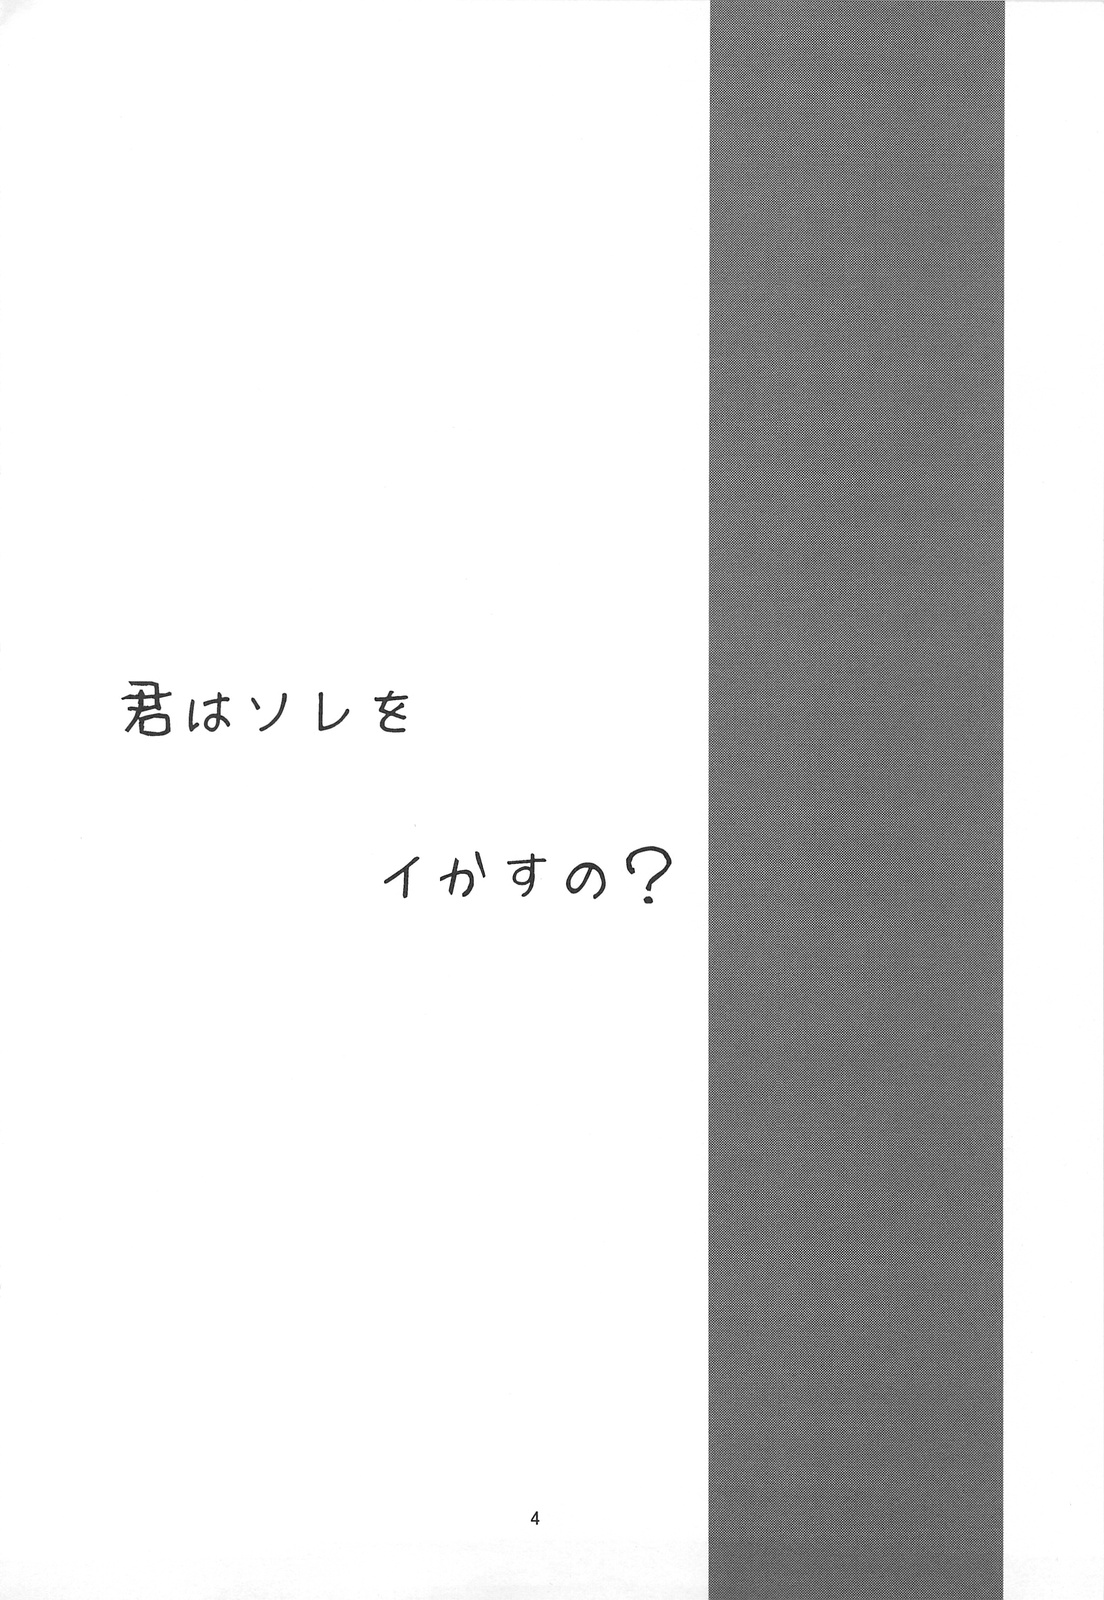 (C75) [こうや堂 (みずきえいむ)] ganzfeld experiment (テレパシー少女 蘭)